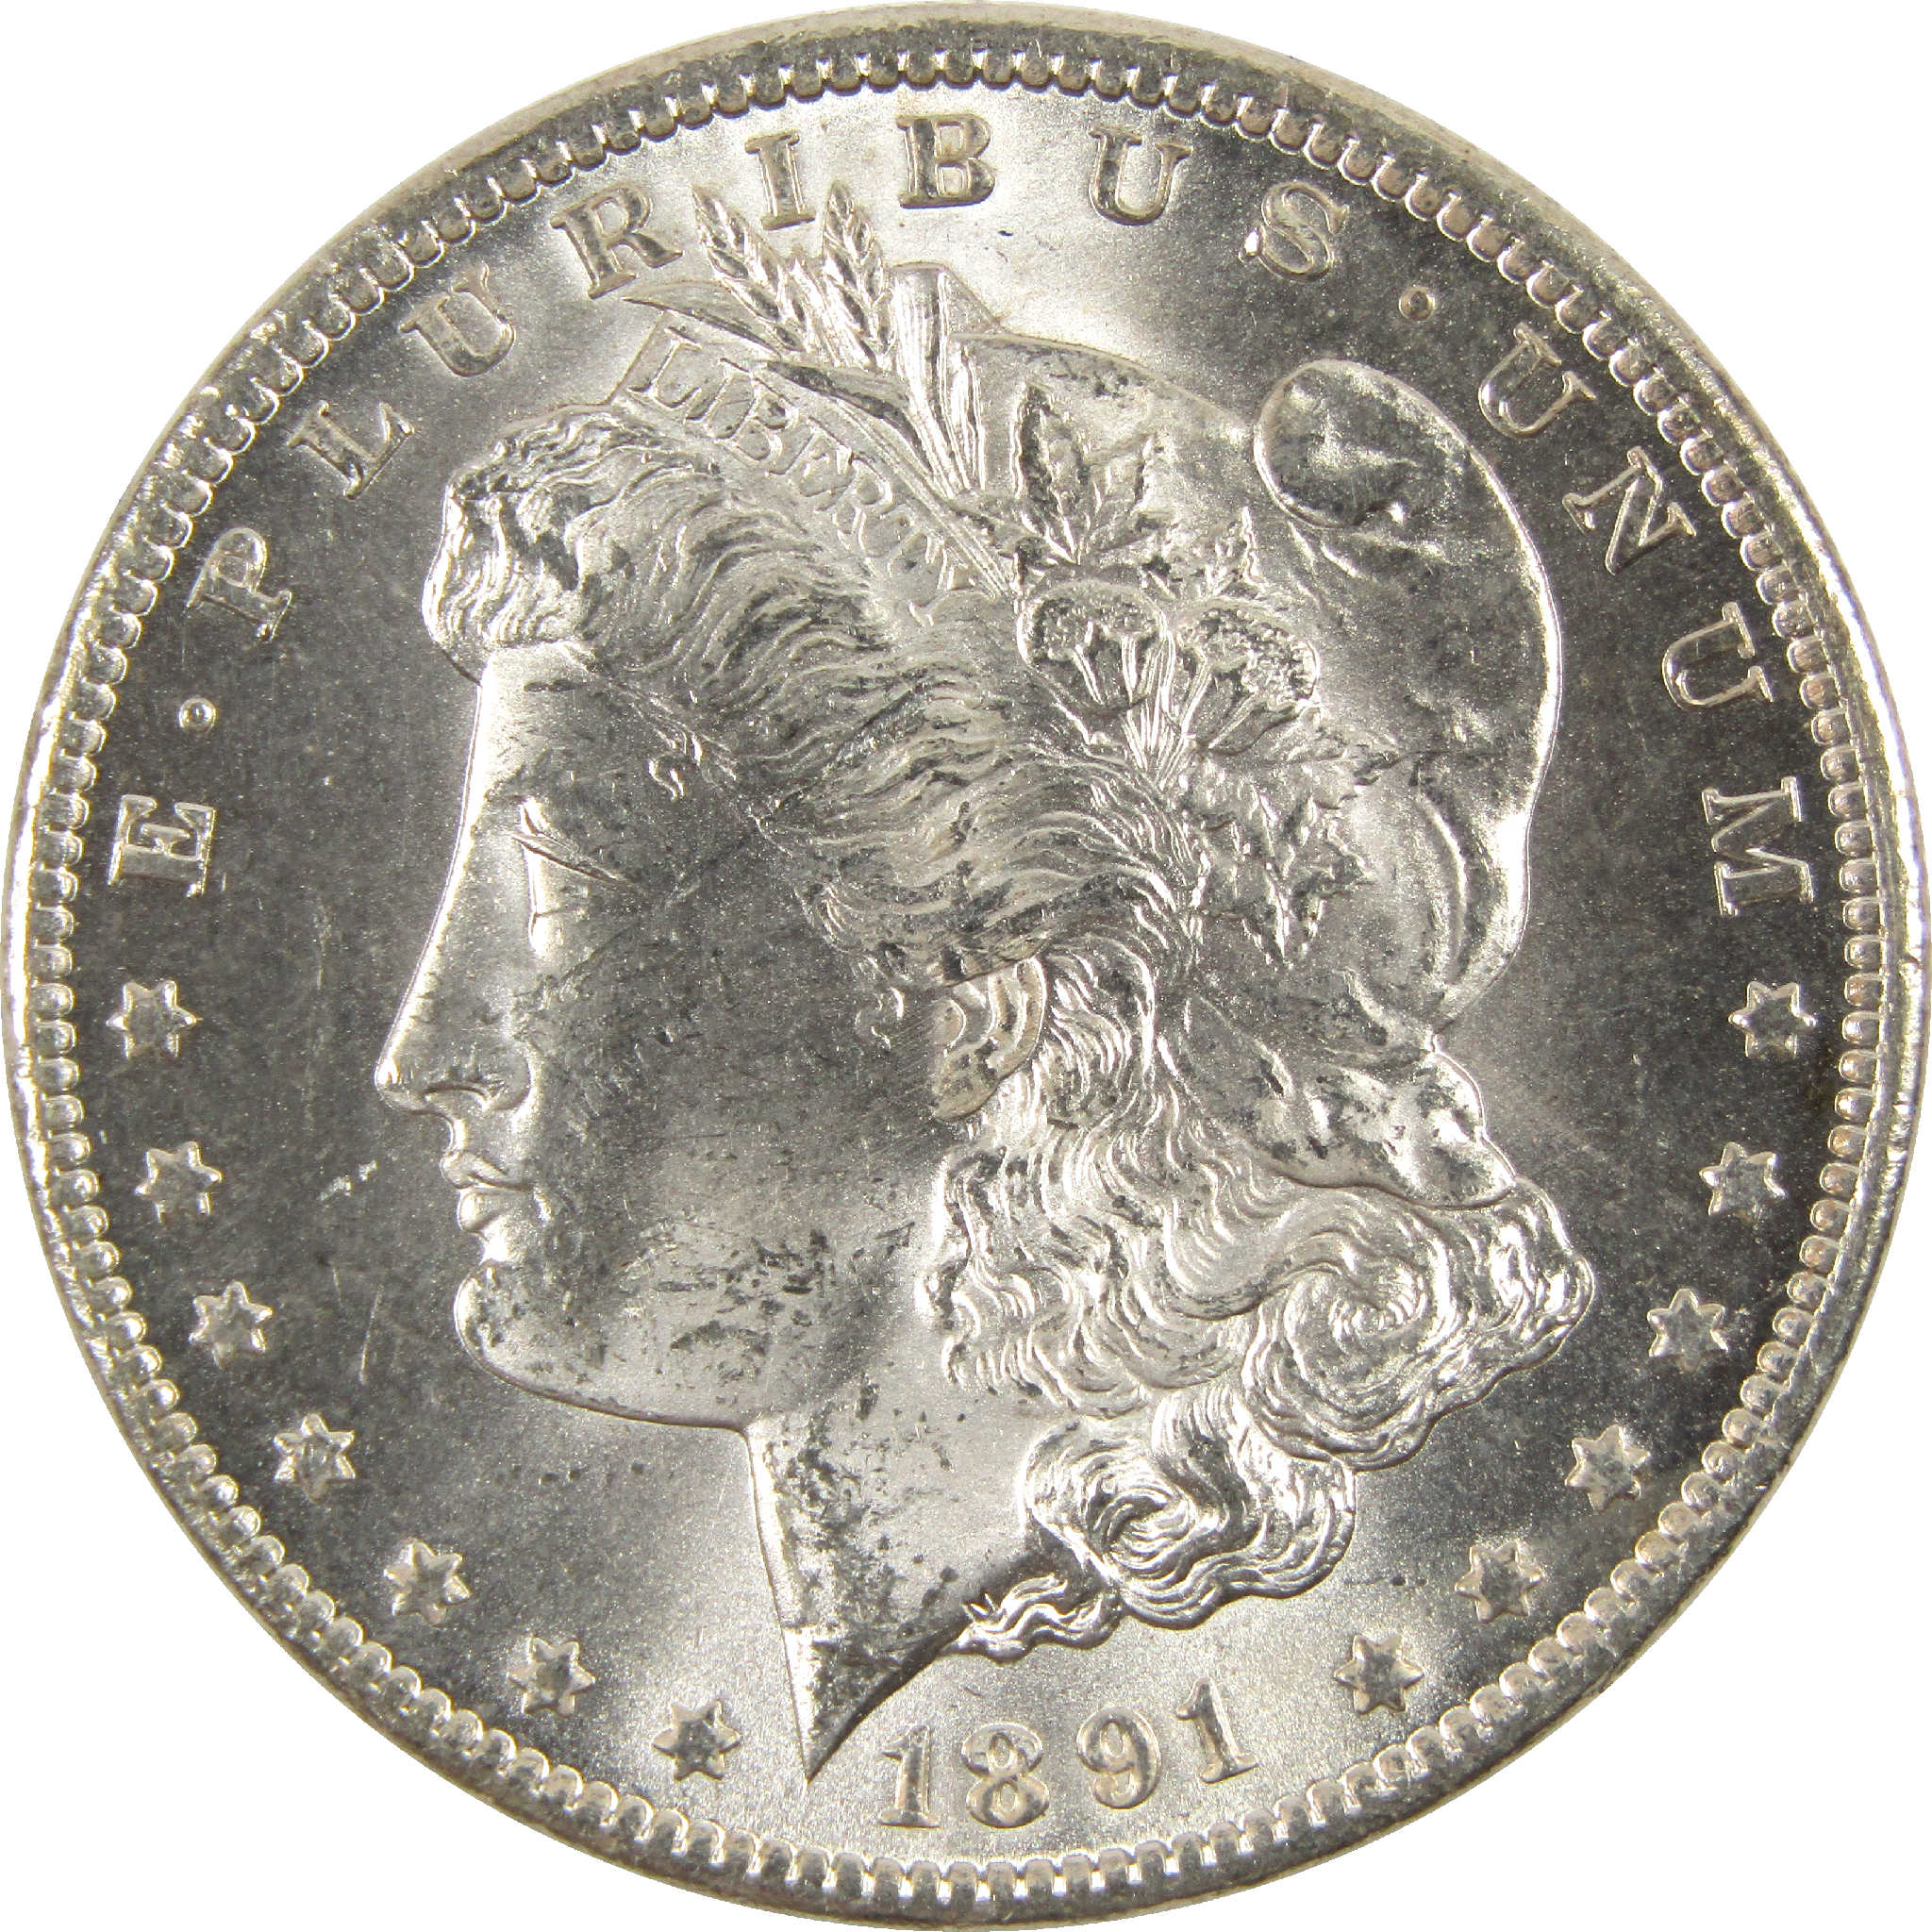 1891 CC Morgan Dollar Uncirculated Silver $1 Coin SKU:CPC6259 - Morgan coin - Morgan silver dollar - Morgan silver dollar for sale - Profile Coins &amp; Collectibles